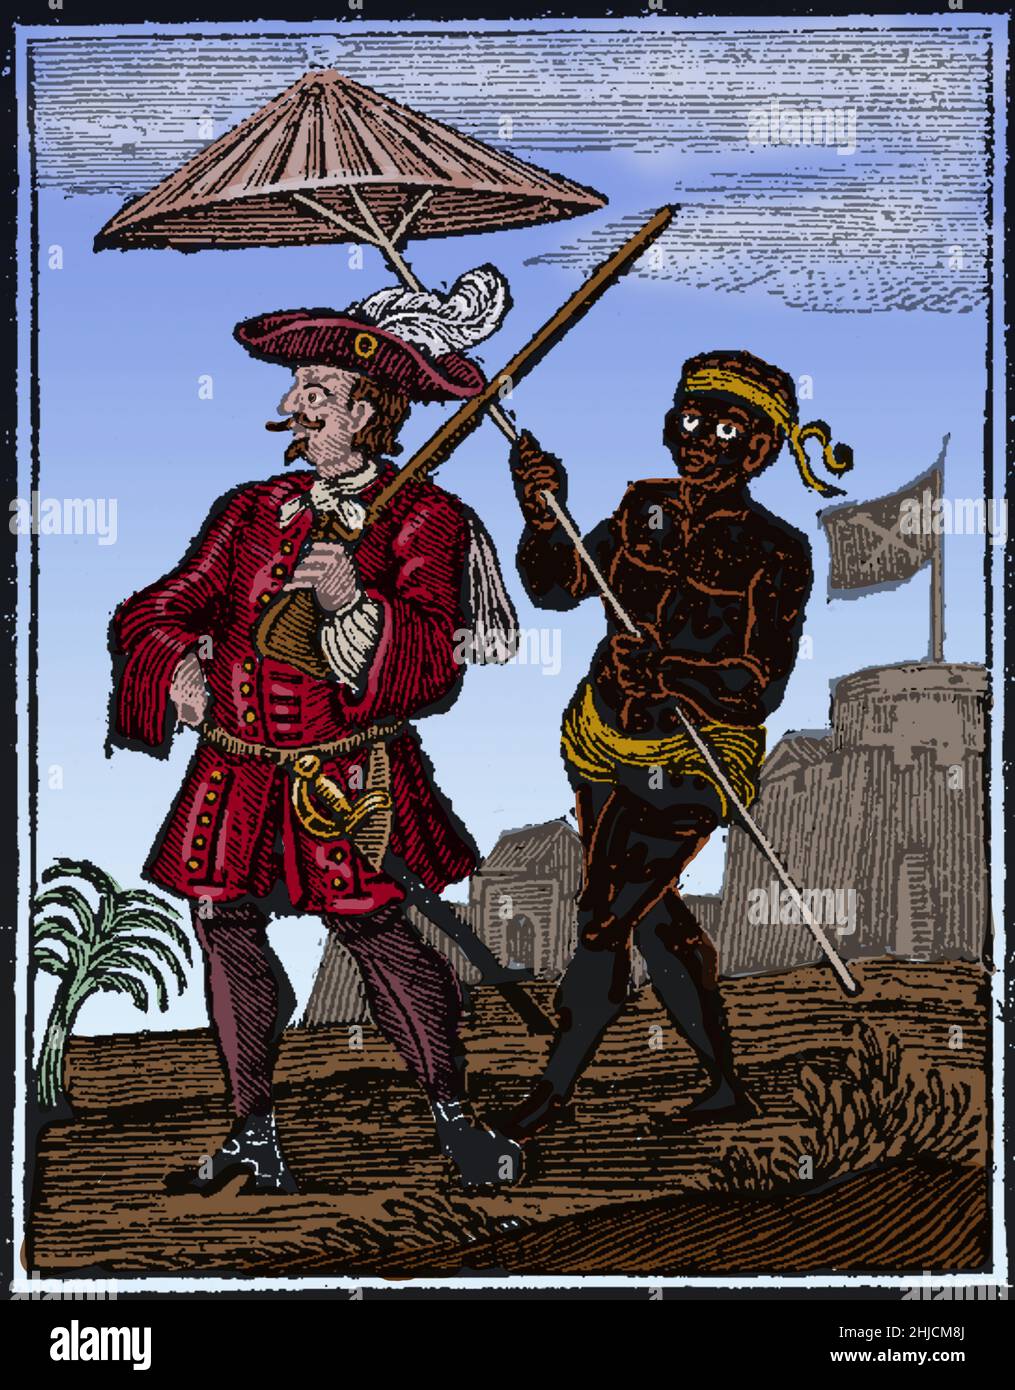 Henry Every (23 de agosto de 1659 - después de 1696) era un pirata inglés que operaba en los océanos Atlántico e Índico. Los famosos capitanes piratas Thomas Tew, William Want, Thomas Wake y William May navegaron bajo su liderazgo. El mayor punto de su carrera fue el Gang-i-Sawai, parte del convoy de barcos de Grand Moghul's of India. Saquearon alrededor de 600,000 libras de oro, plata y joyas. Cada uno disolvió su flota, navegó al Caribe, donde cambió su nombre por Benjamin Bridgeman. Navegó a Irlanda con restos de su tripulación. Algunos de ellos fueron capturados y ahorcados, pero escapó y va Foto de stock